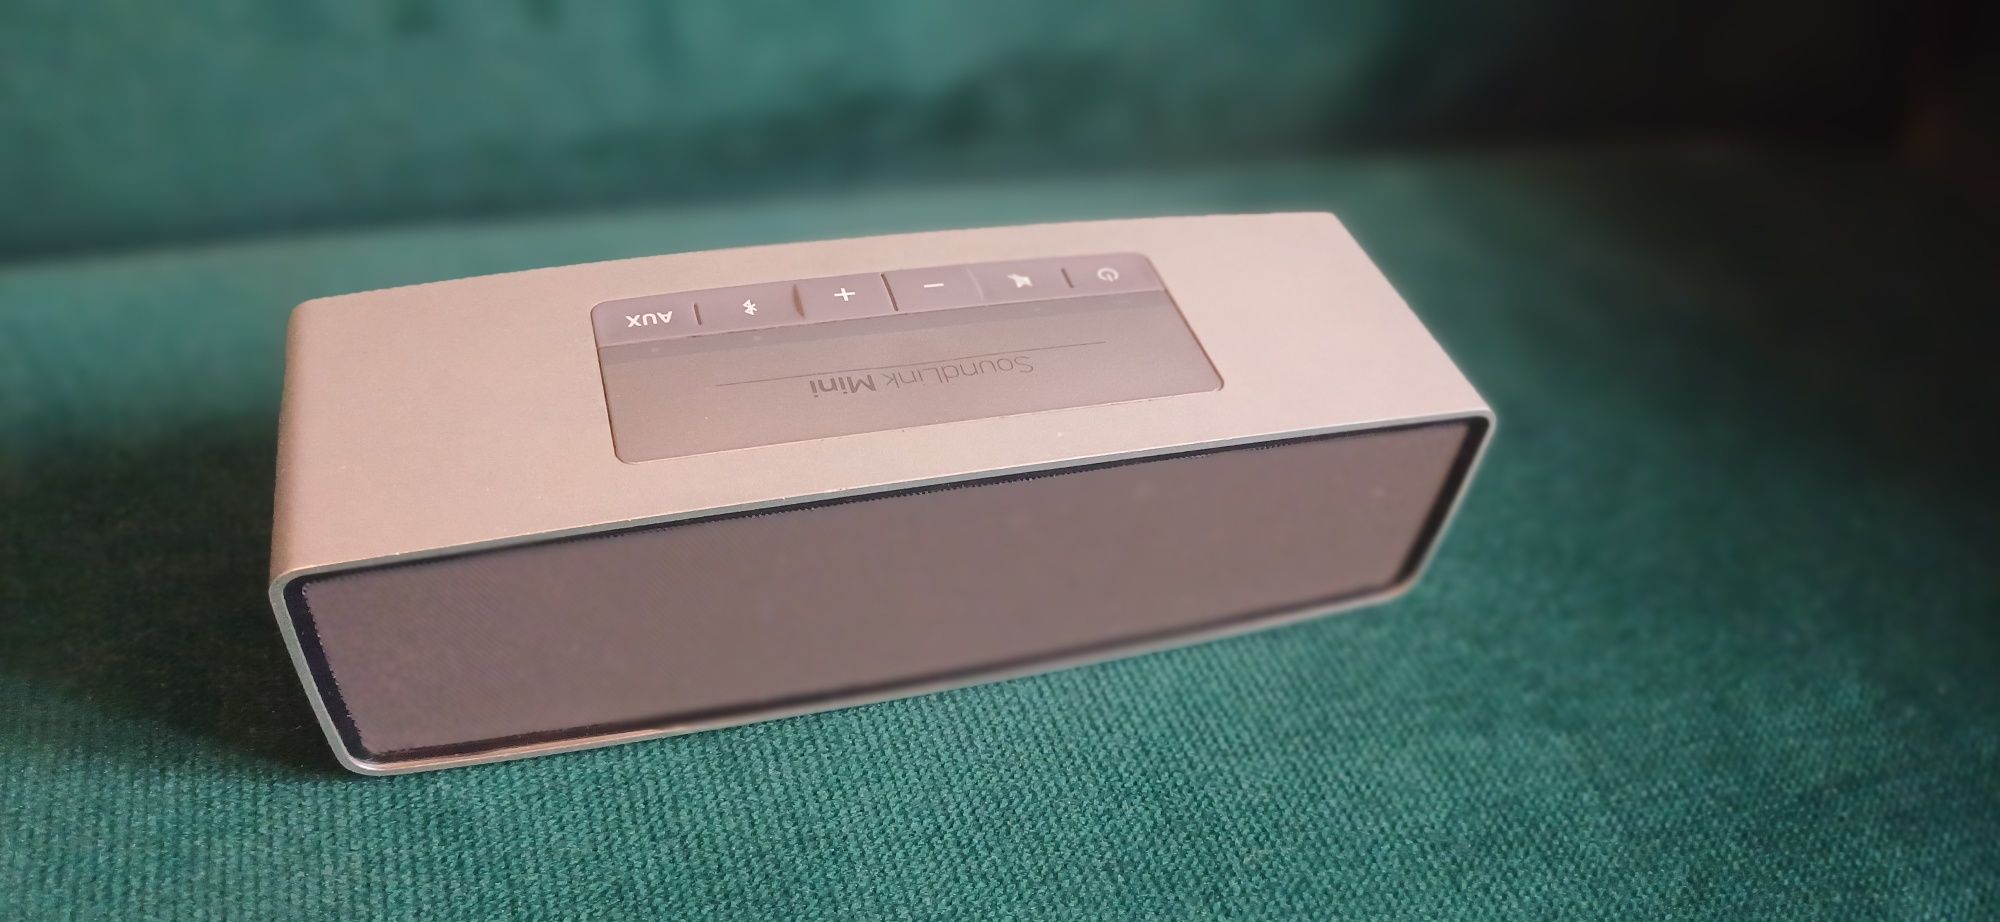 Bose soundlink mini - głośniki nowa oryginalna ładowarka